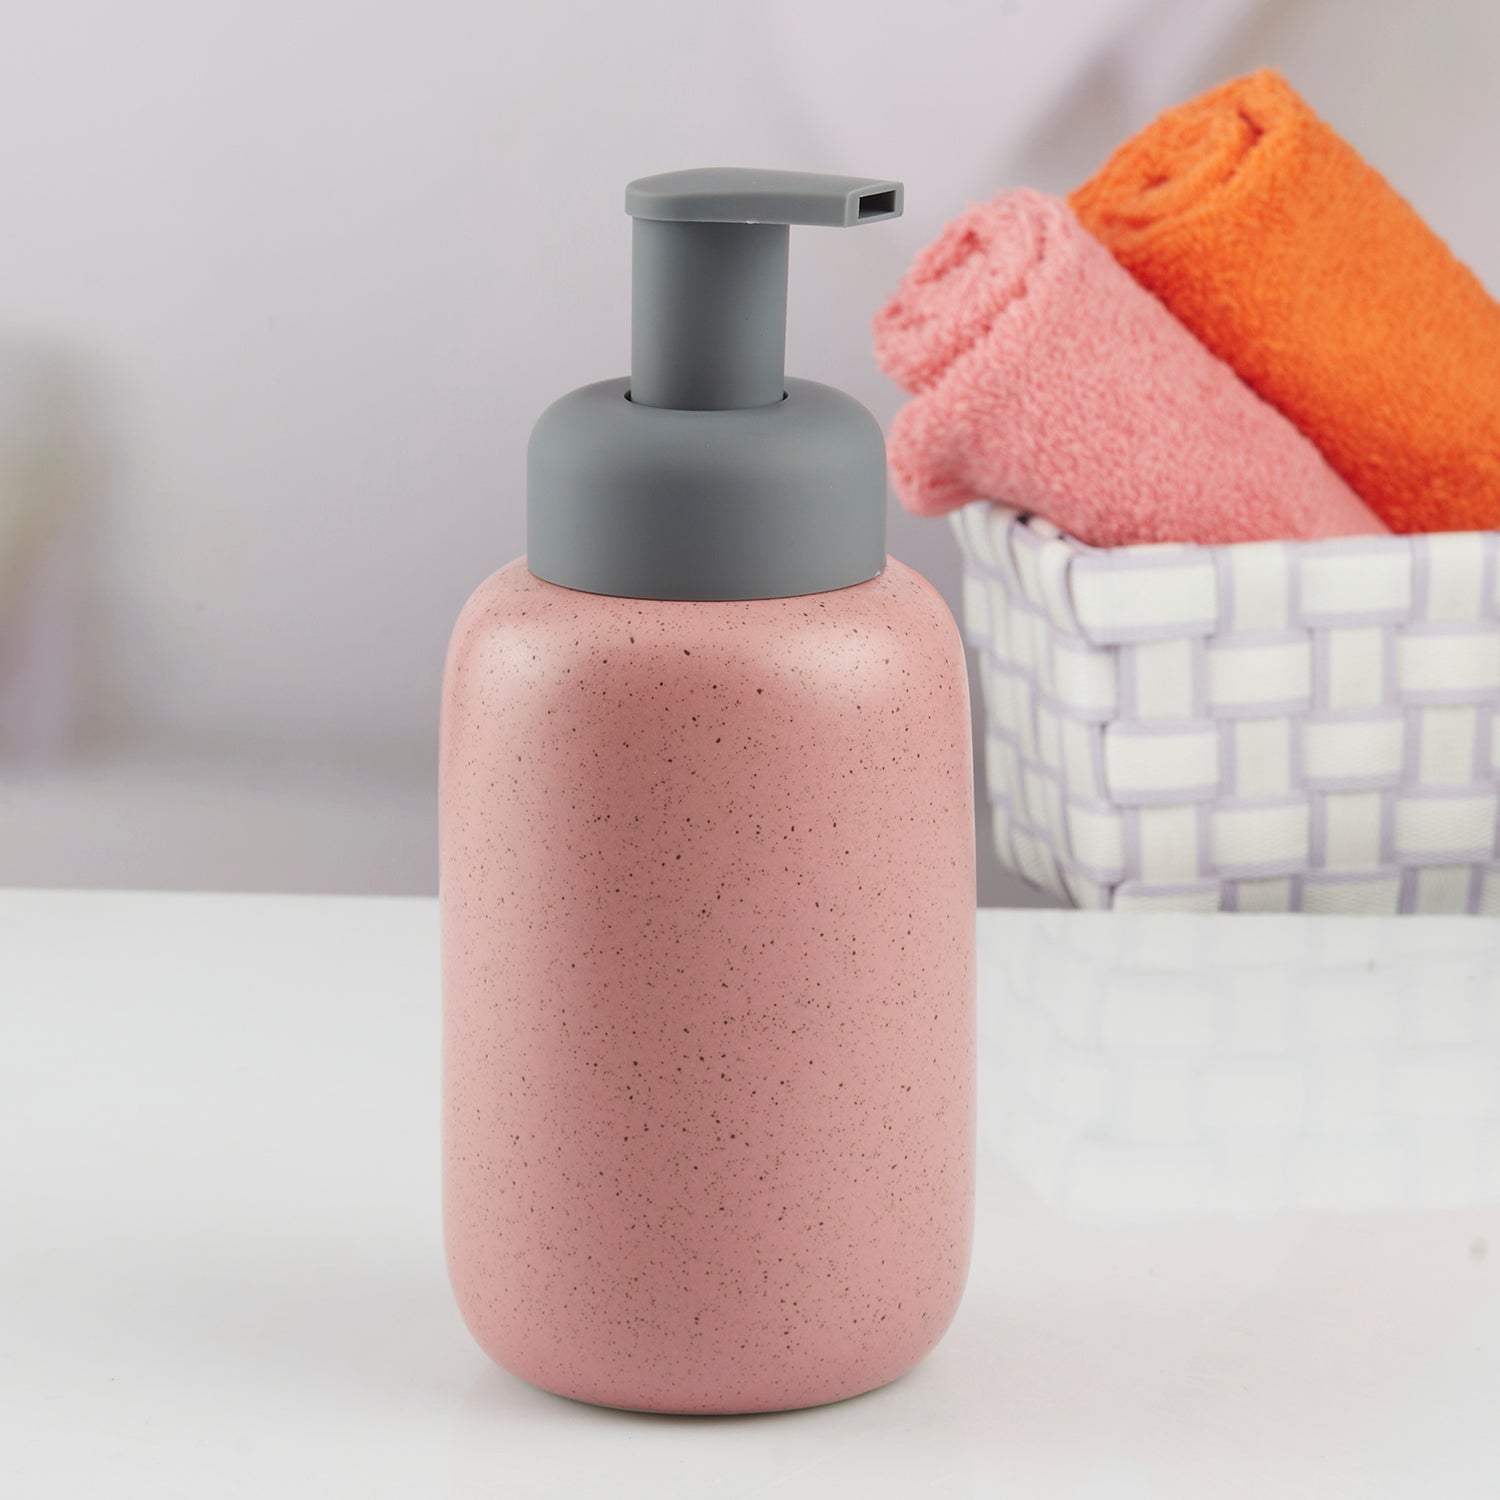 Kookee Ceramic Soap Dispenser for Bathroom handwash, refillable pump bottle for Kitchen hand wash basin, Set of 1, Pink (10733)